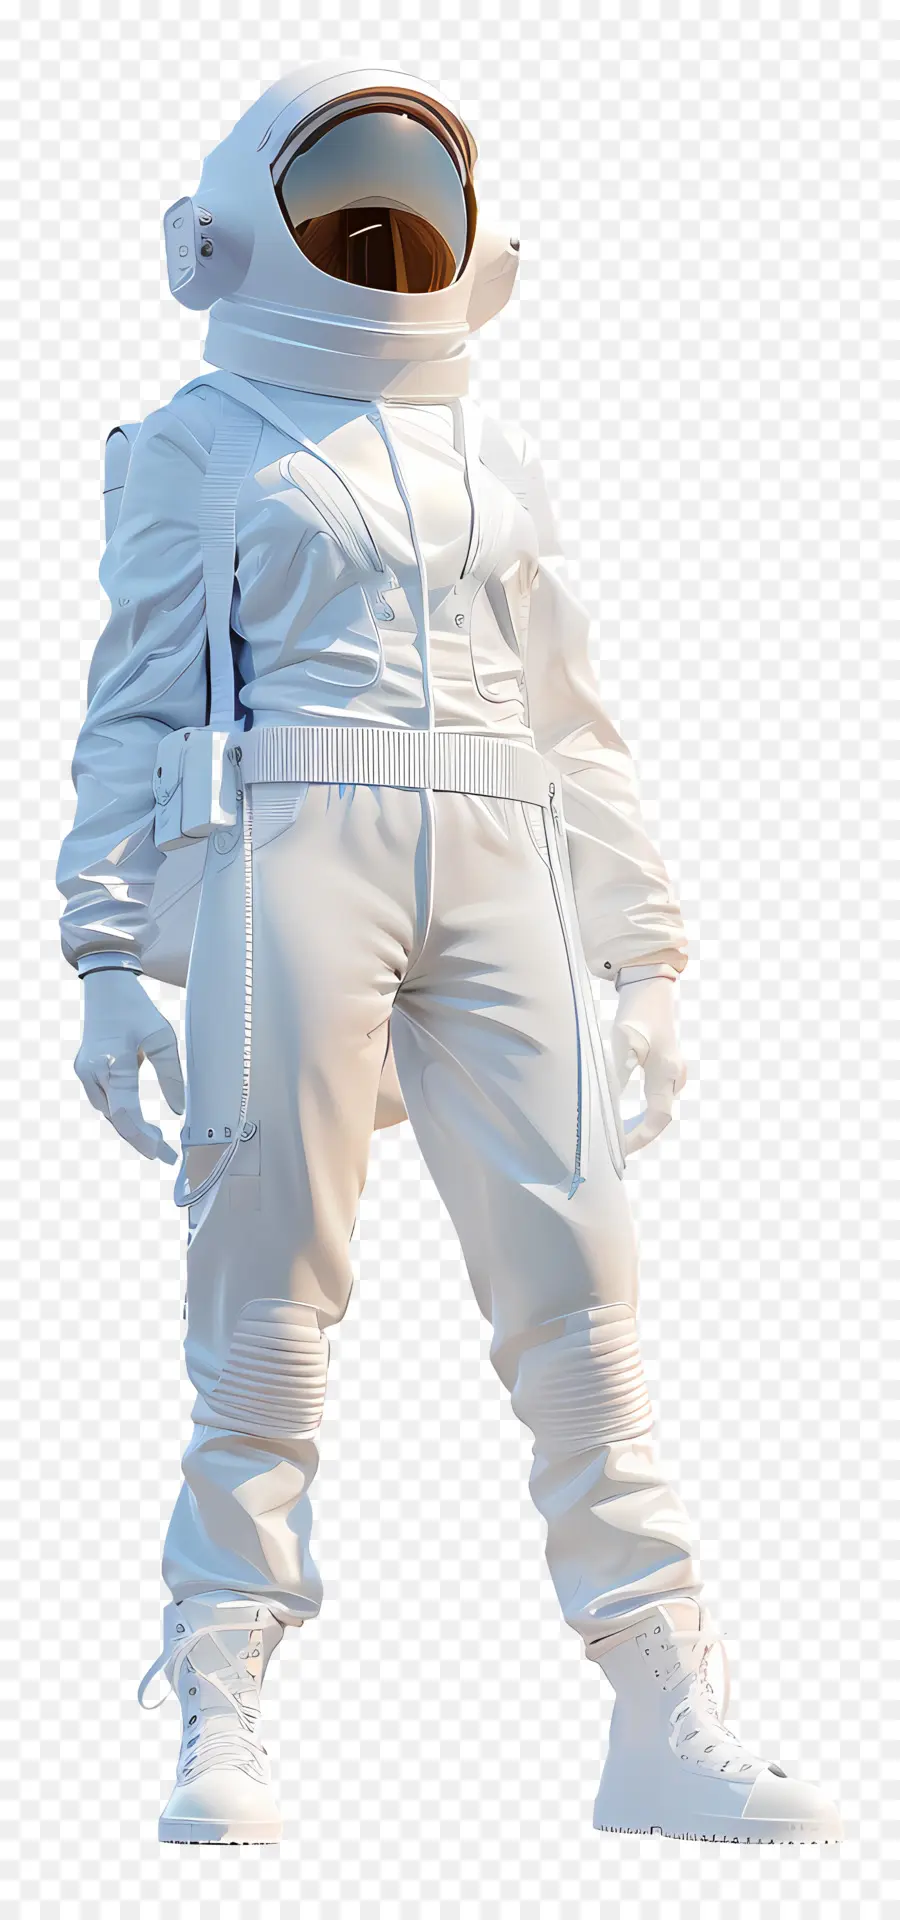 Astronaut - Frau Astronaut im weißen Anzug, Helm